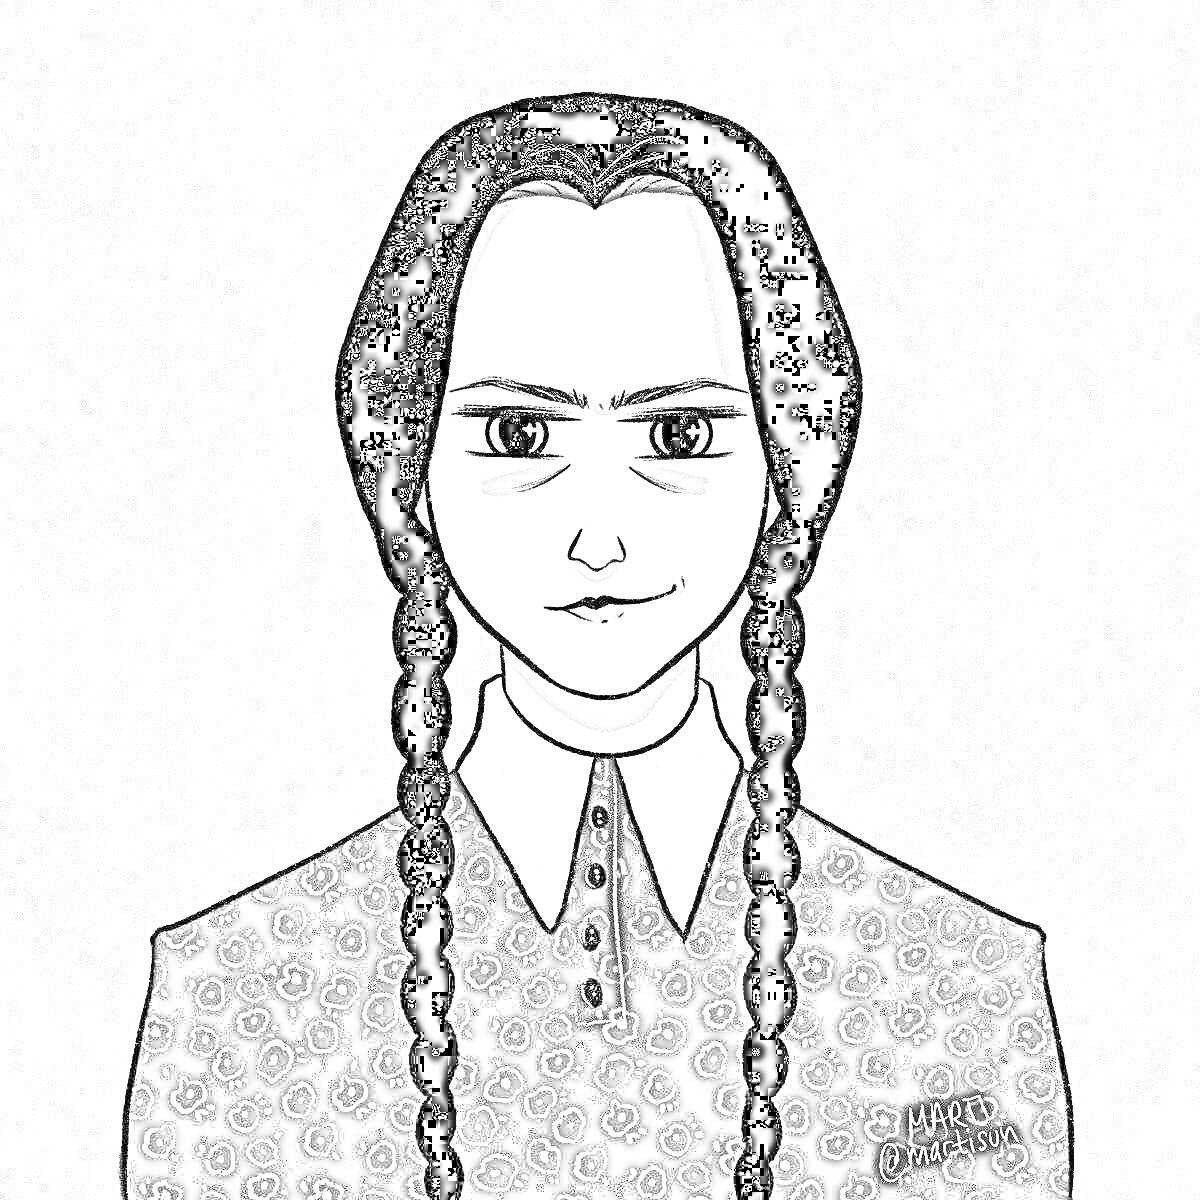 Портрет девушки с длинными косами и строгим выражением лица в сезонном платье с геометрическим узором и белым воротником на сером фоне